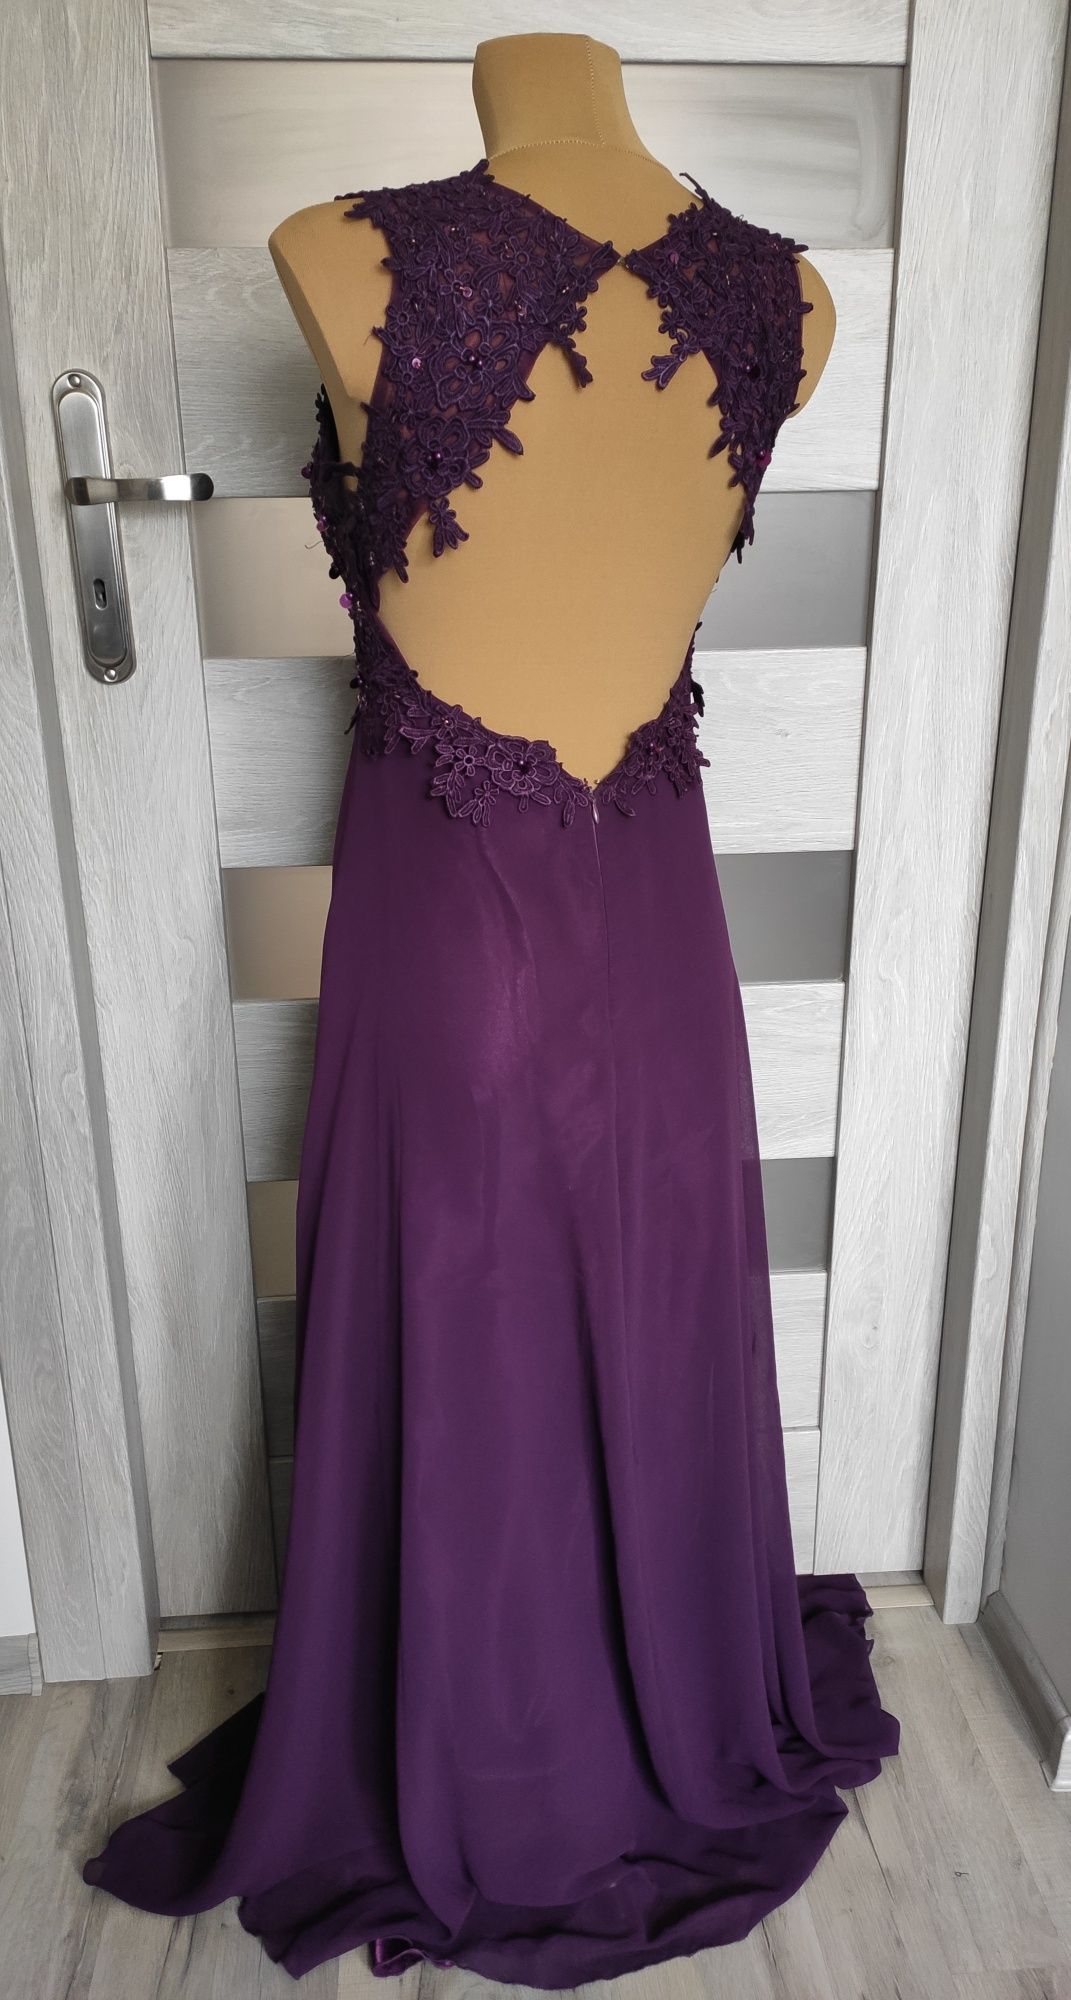 Fioletowa zdobiona sukienka długa maxi S na wesele